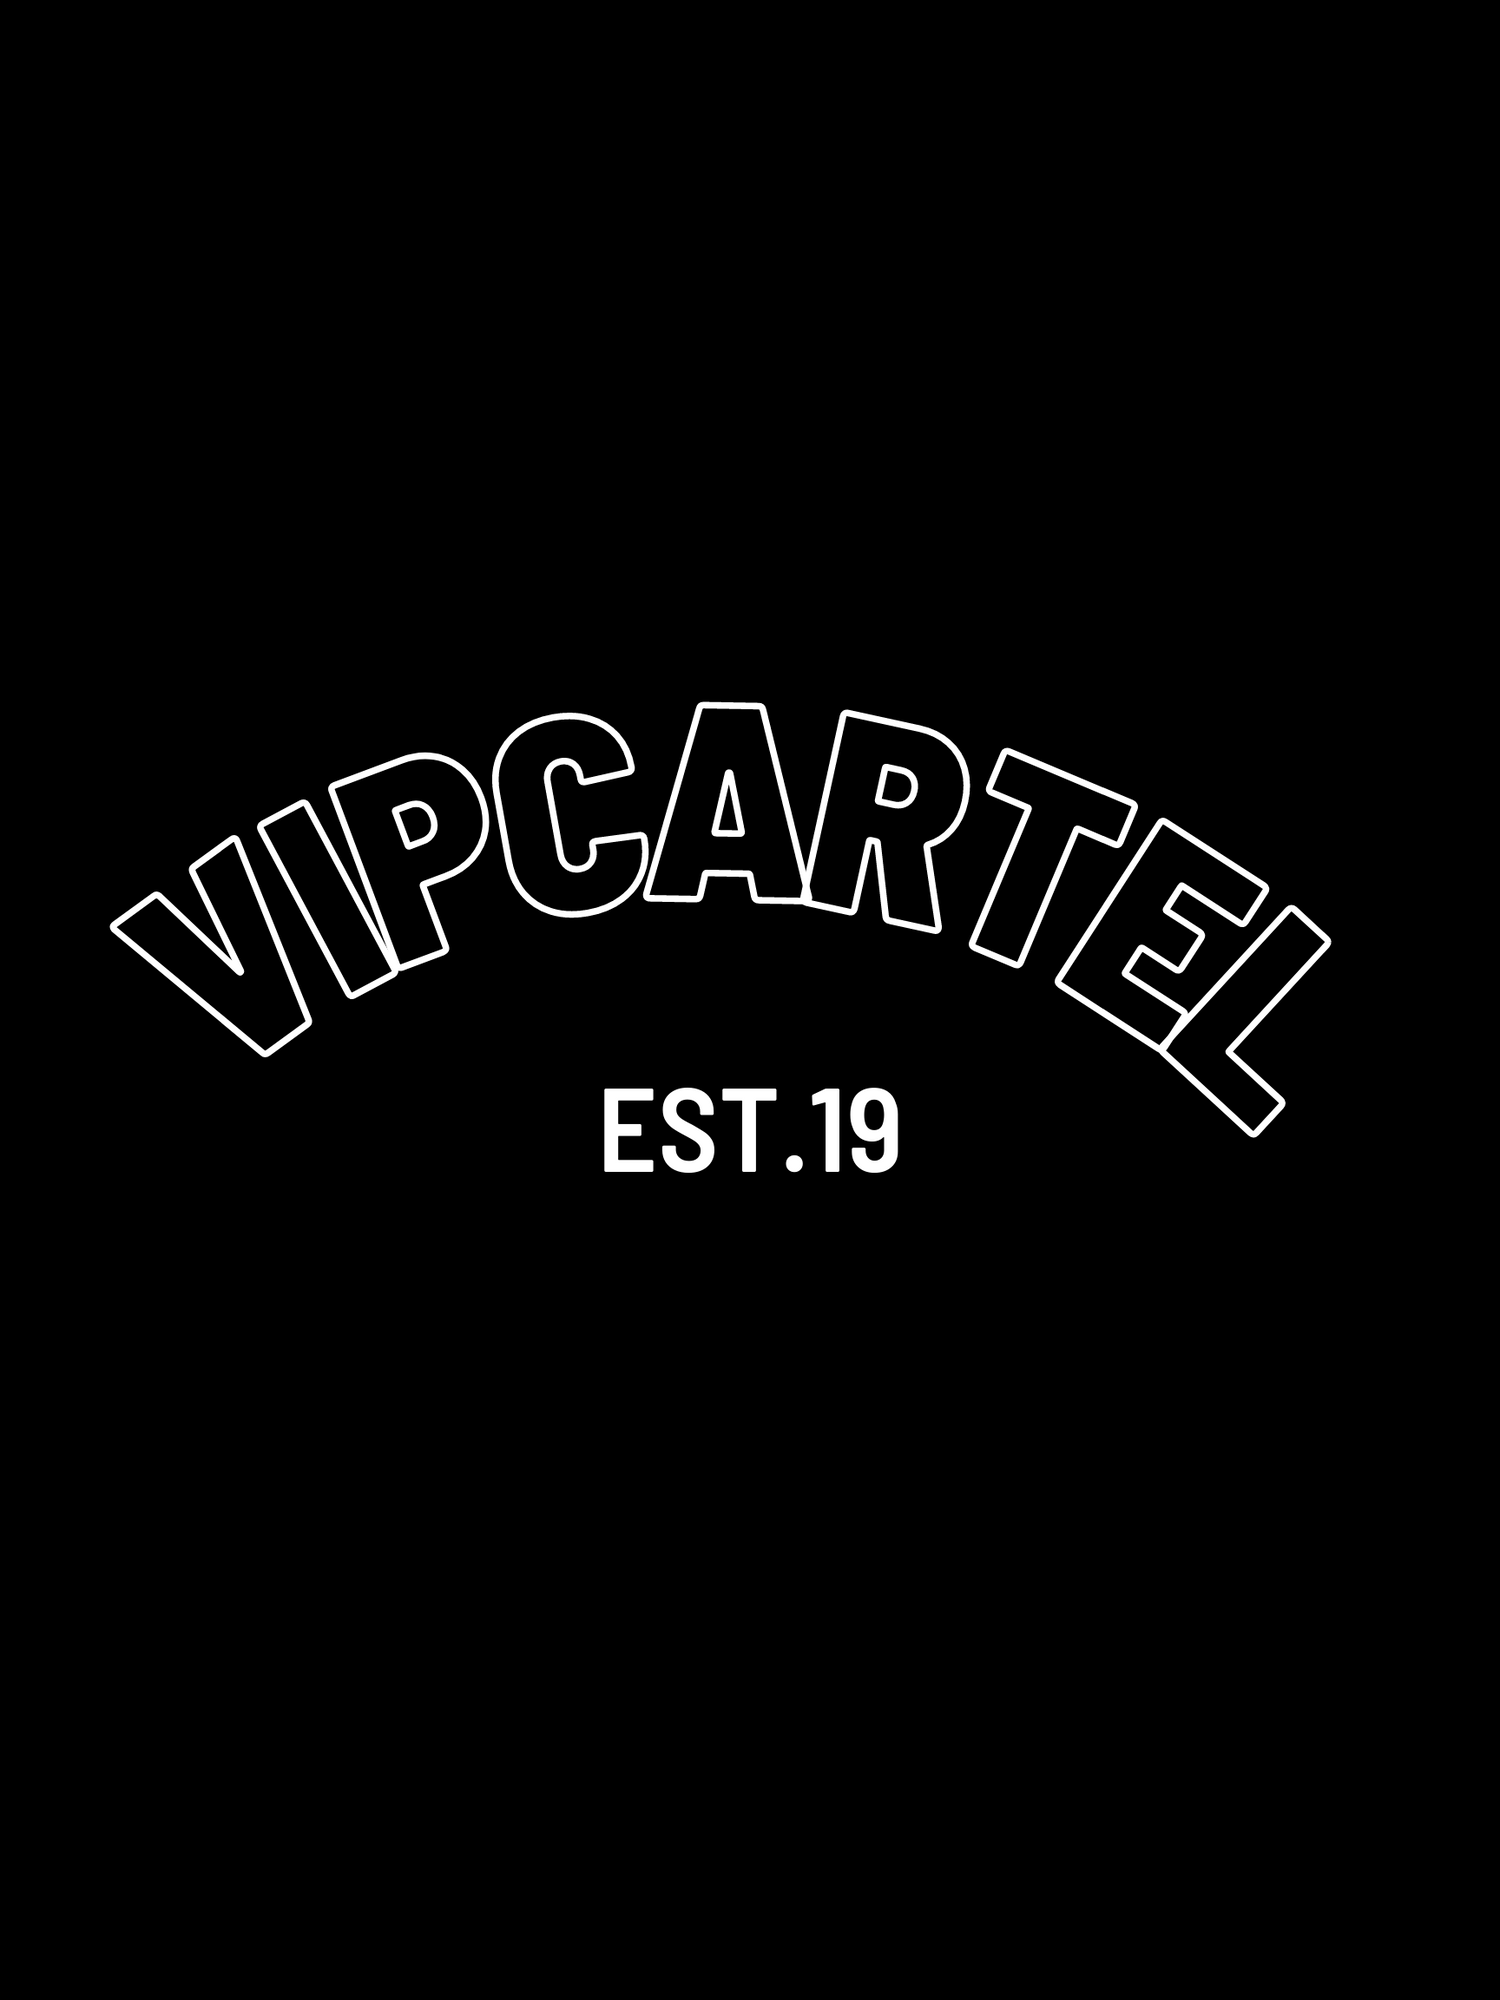 About Us – VIPCARTEL Automotive